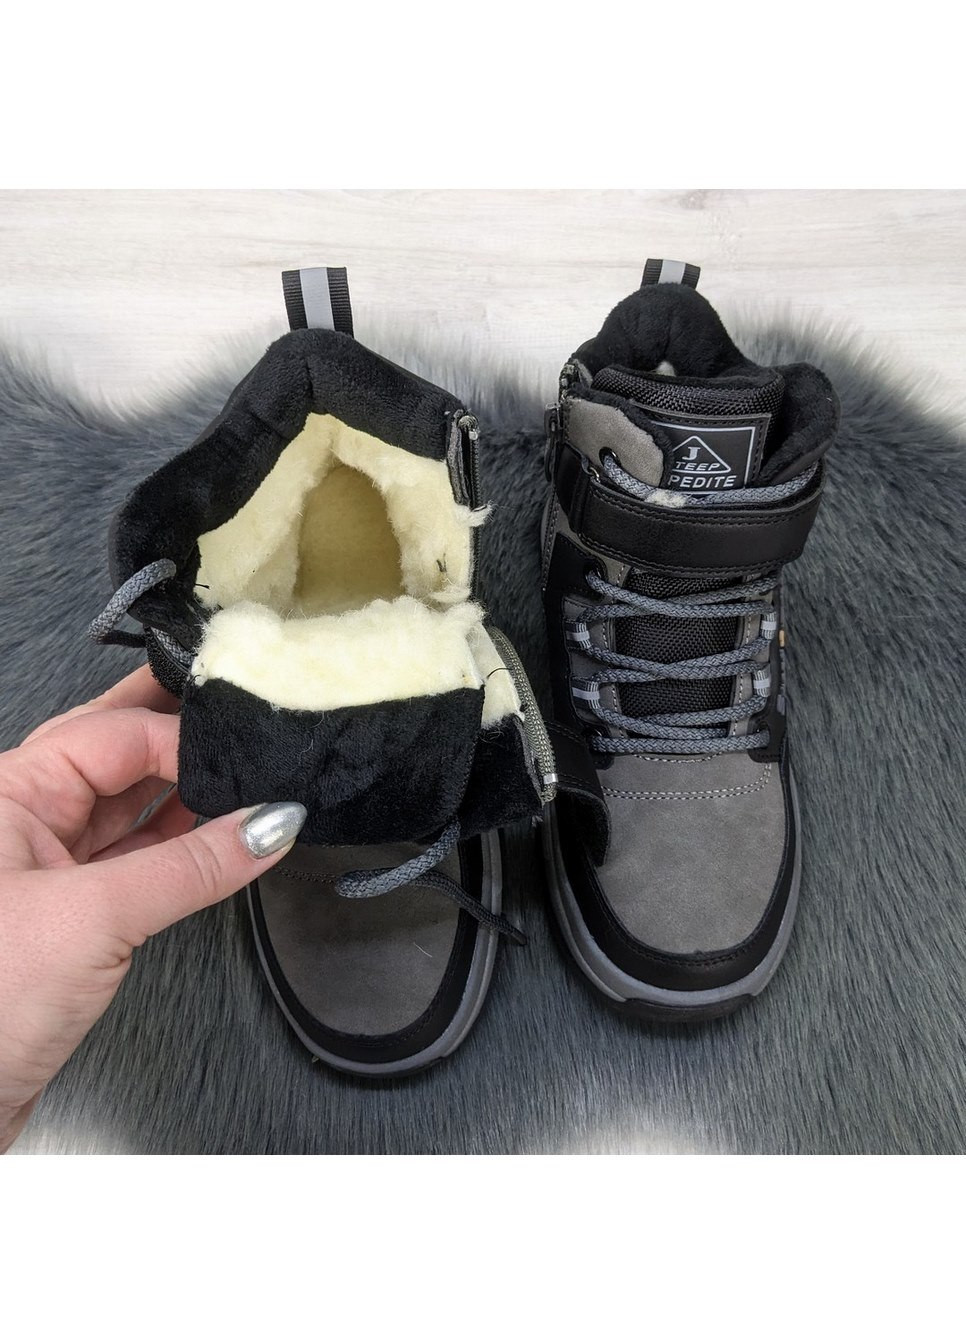 Серые повседневные осенние ботинки детские зимные для мальчика Jong Golf